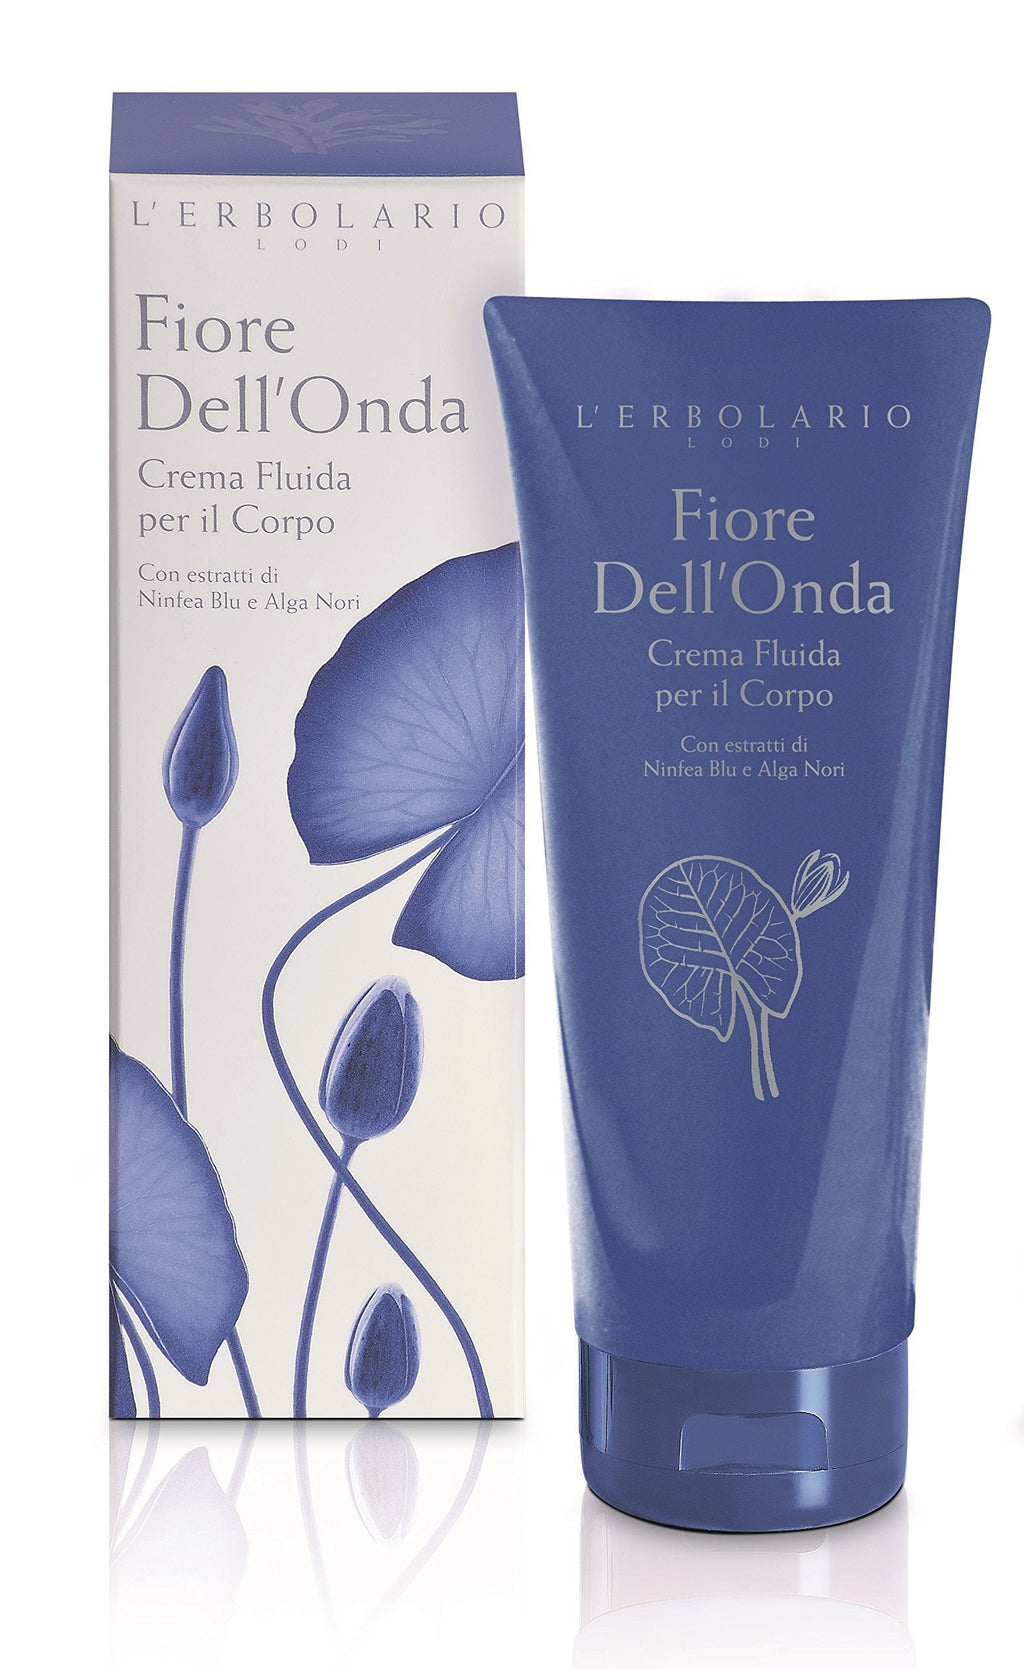 L'Erbolario - Fiore Dell'onda - Body Cream - Floral, Water Scent - Nourish, Moisturize & Tone Skin with Blue Water Lily & Nori Seaweed, 6.7 oz - BeesActive Australia